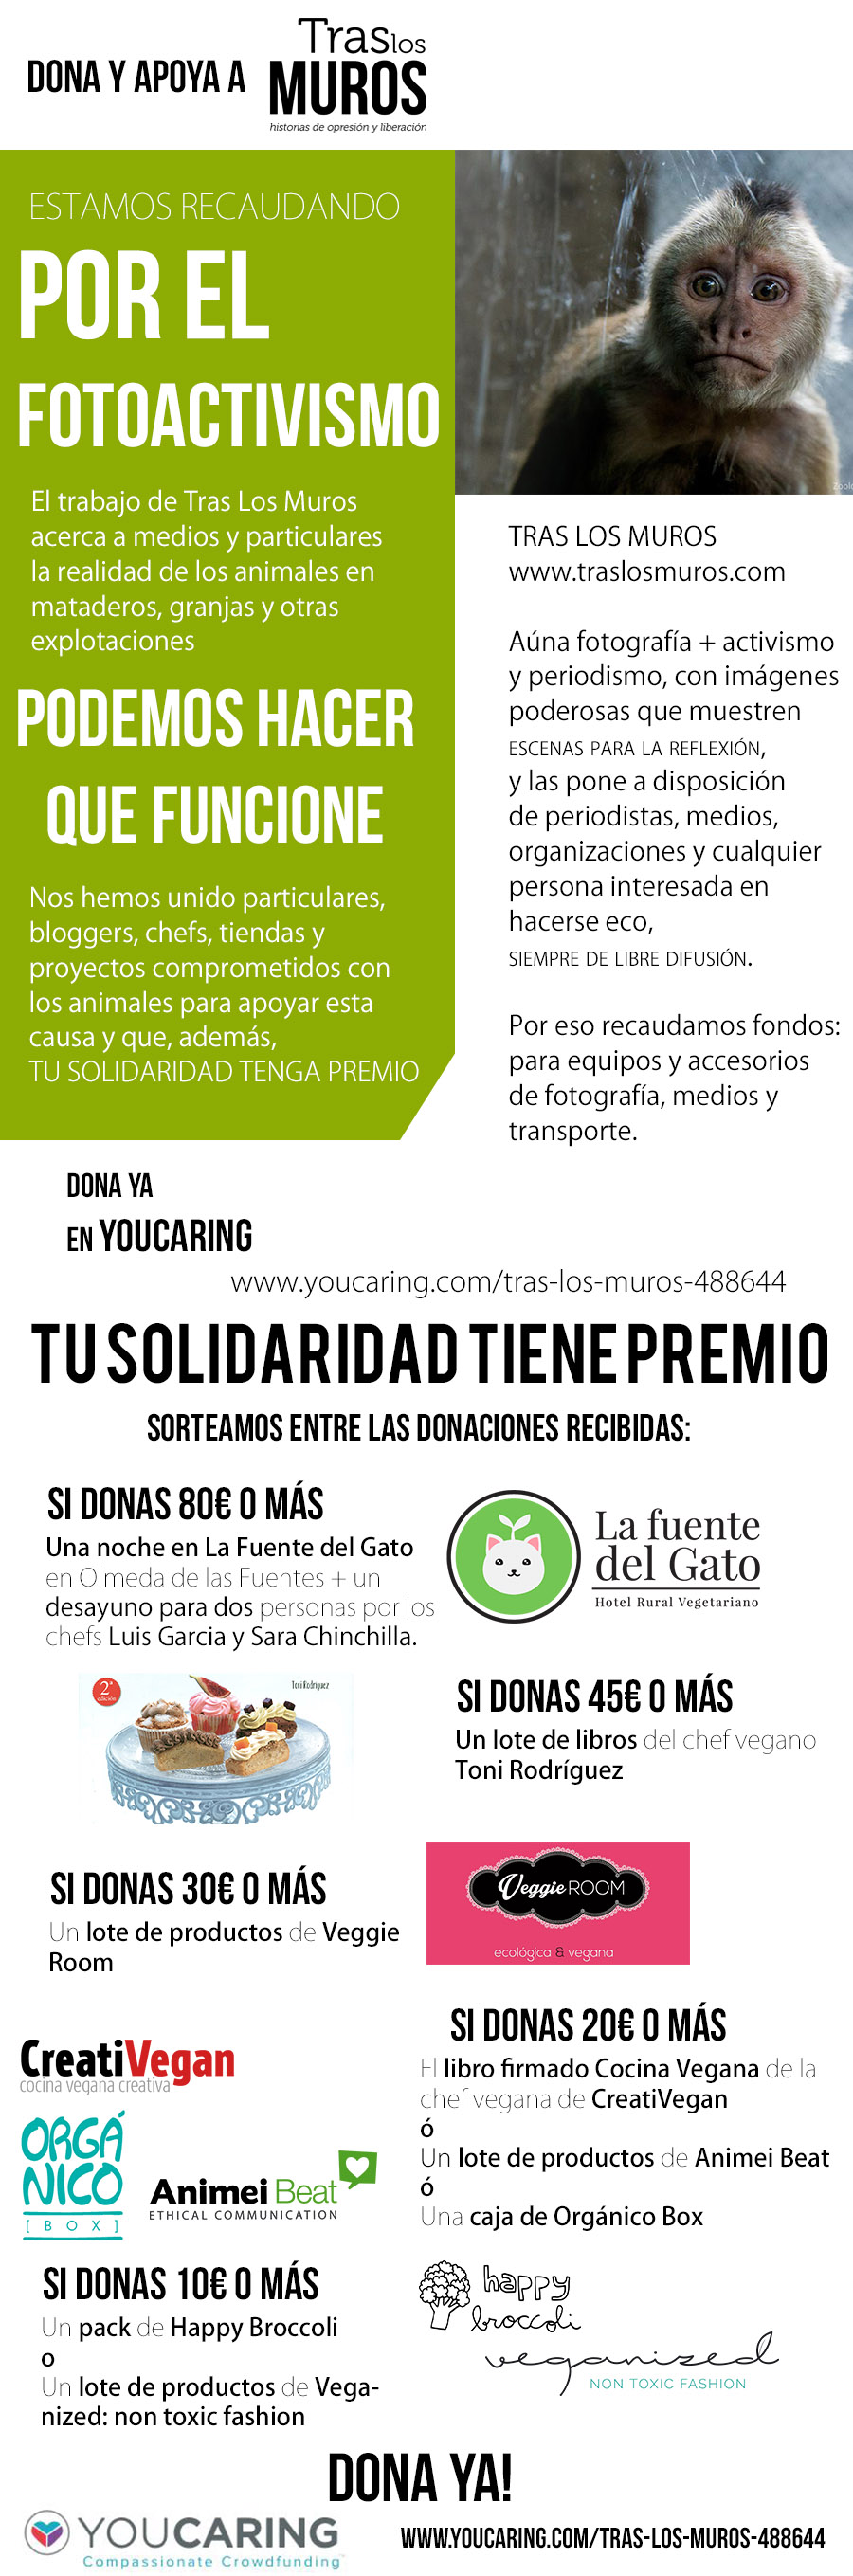 Campaña de donación para TrasLosMuros